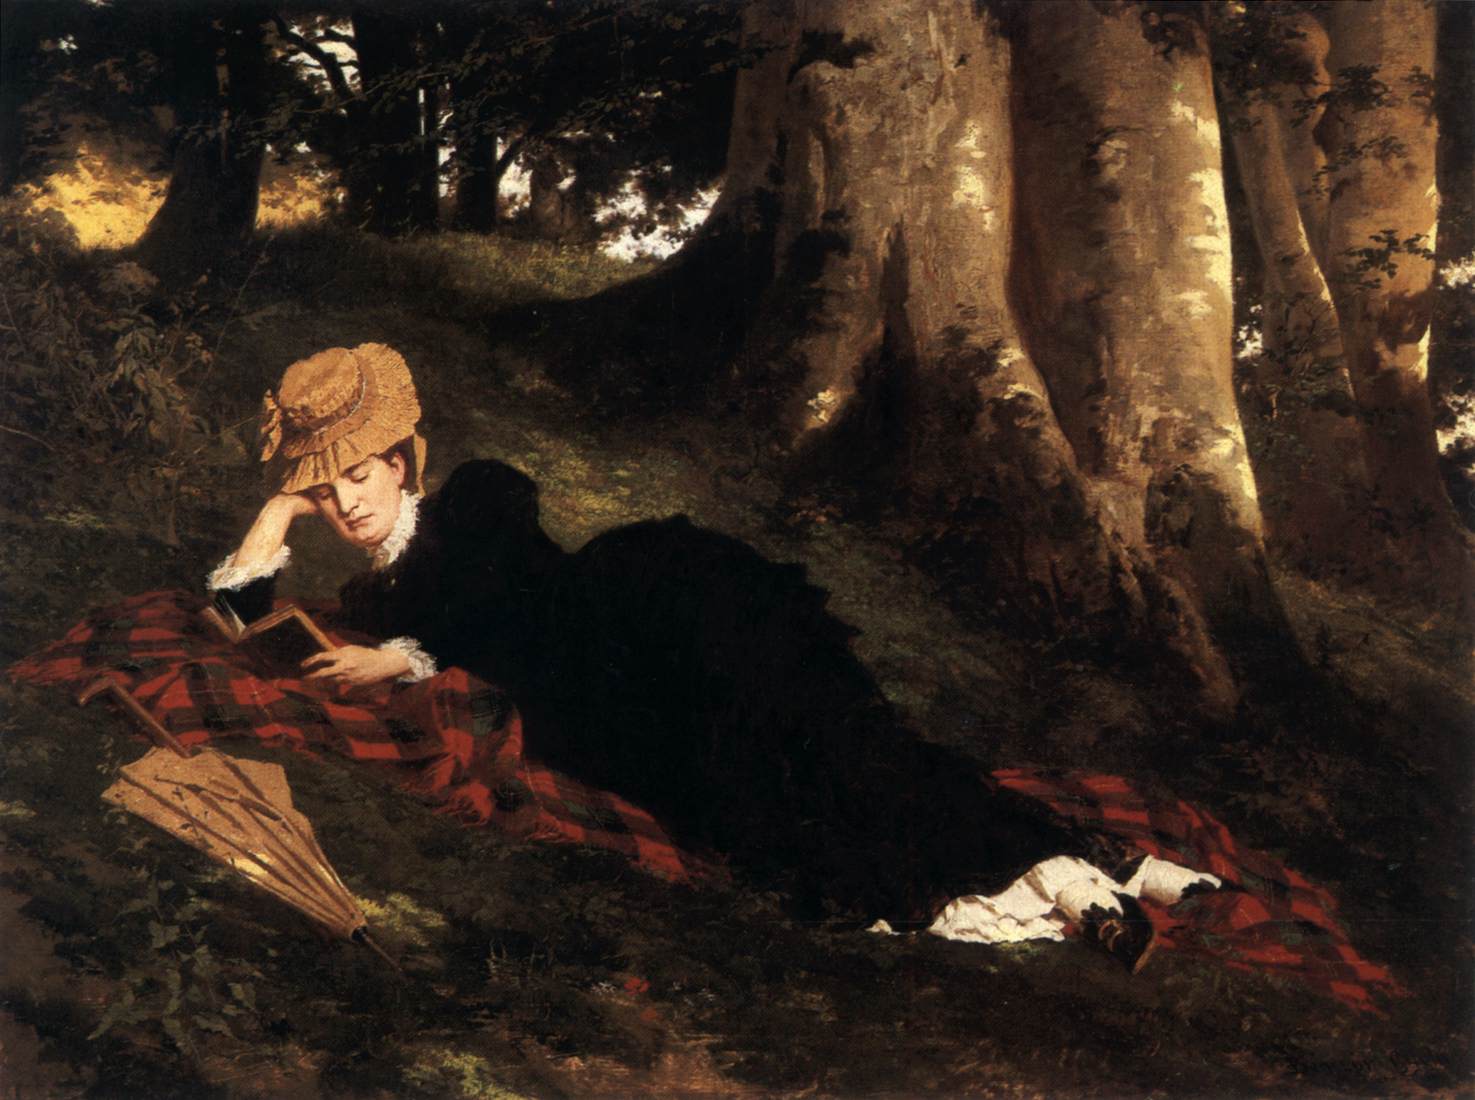 Leggendo la donna nella foresta